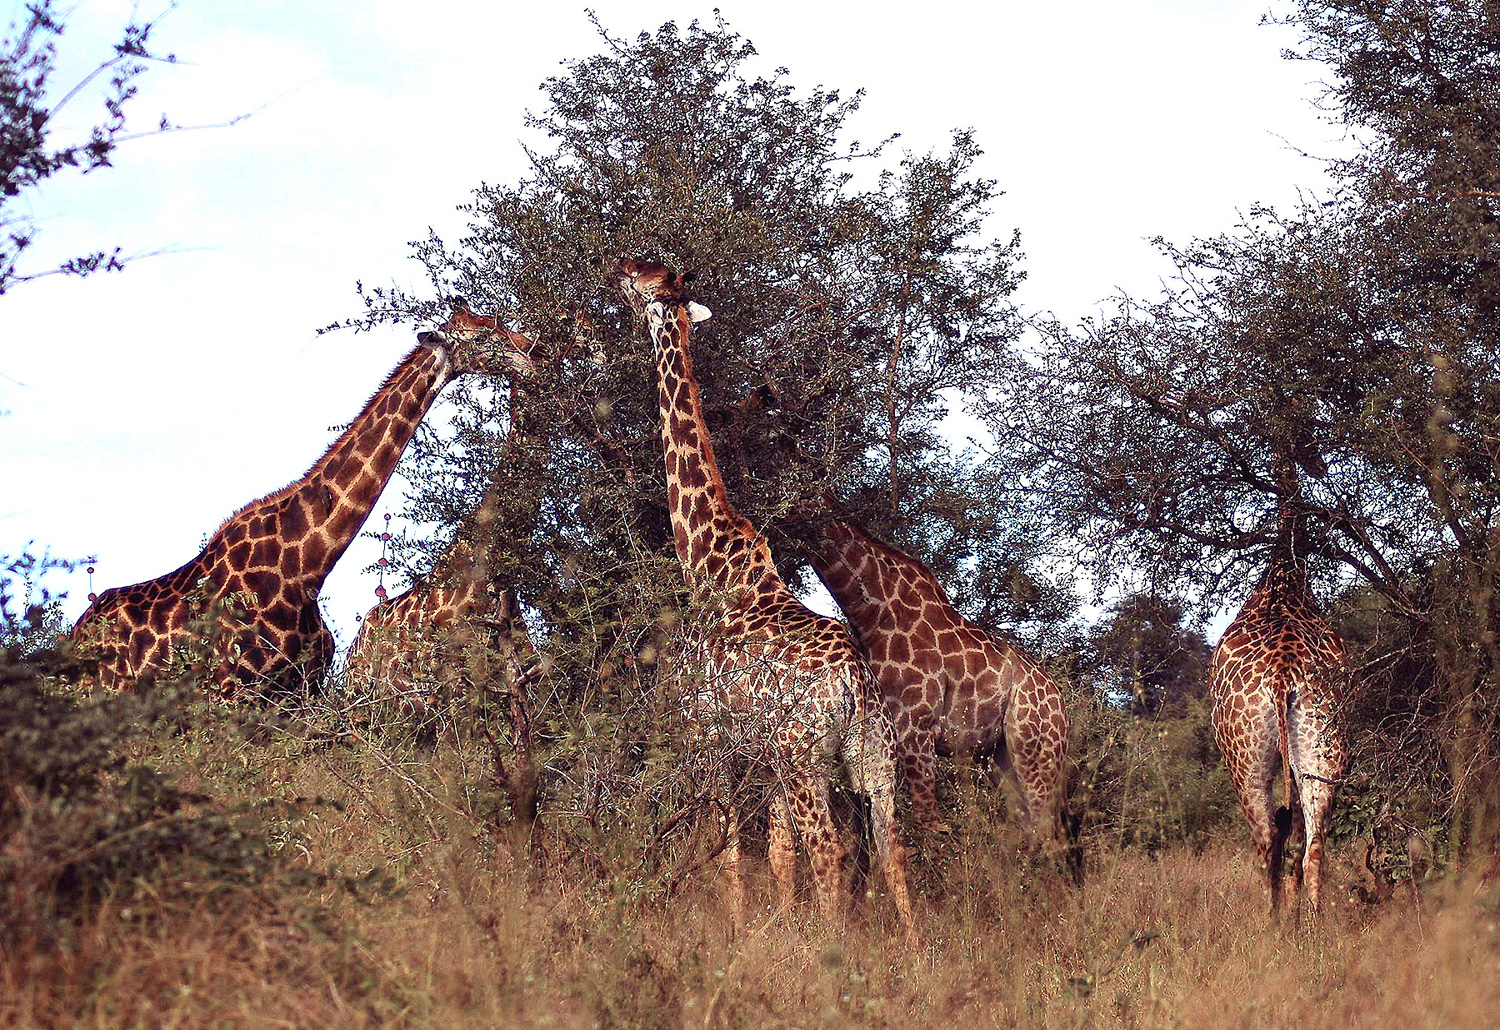 Eclipse 2002 - A46 - Kruger - Five Giraffes